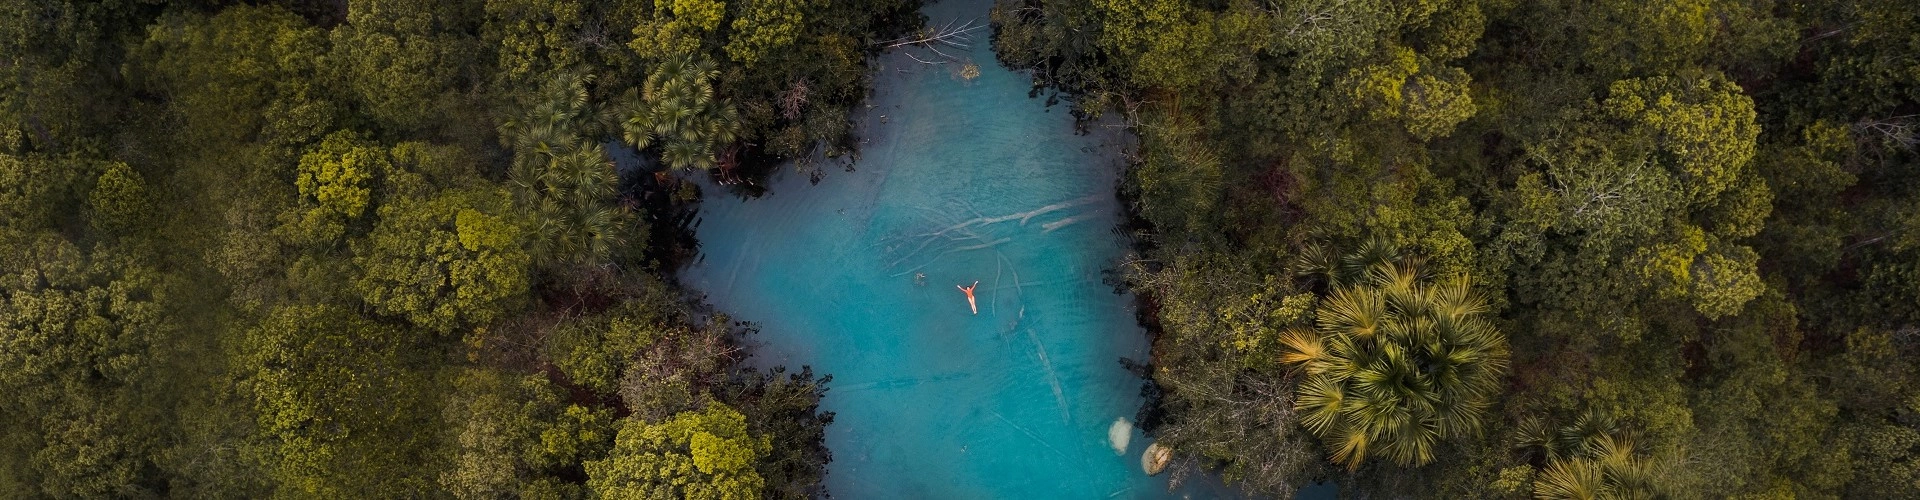 Vista panorâmica de uma lagoa de água azul cristalina onde uma pessoa flutua na superfície das águas com os braços abertos. Ao redor, várias árvores de folhas verdes cercam a vegetação.